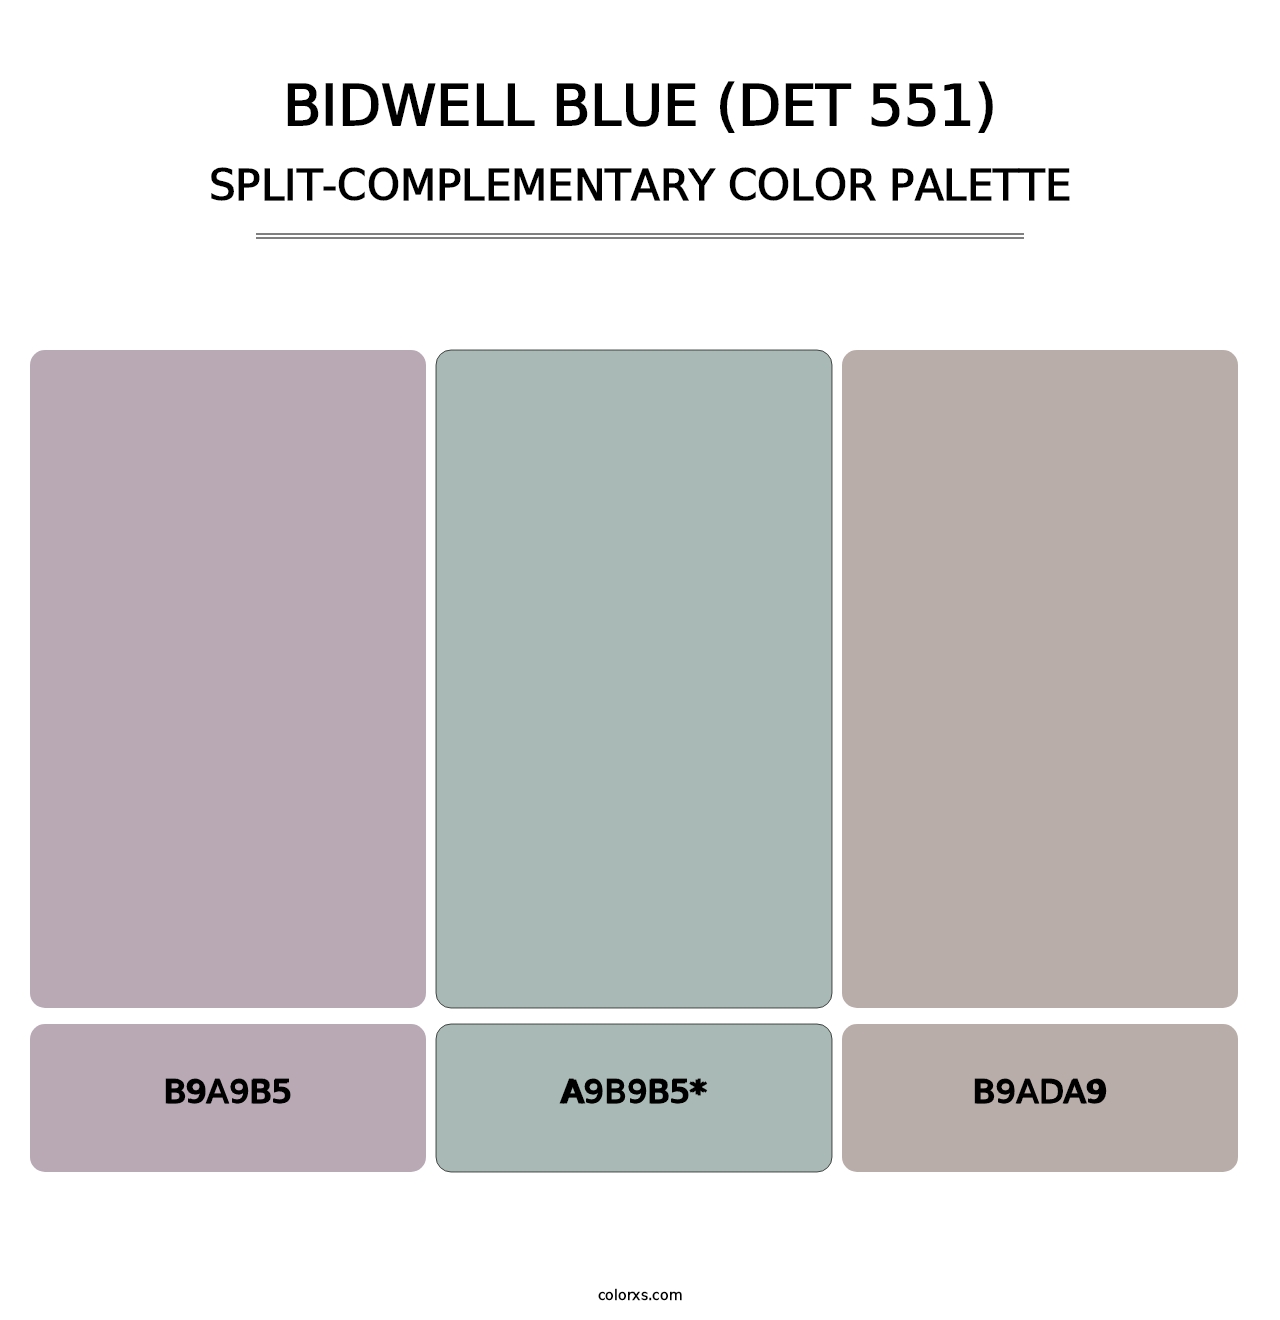 Bidwell Blue (DET 551) - Split-Complementary Color Palette